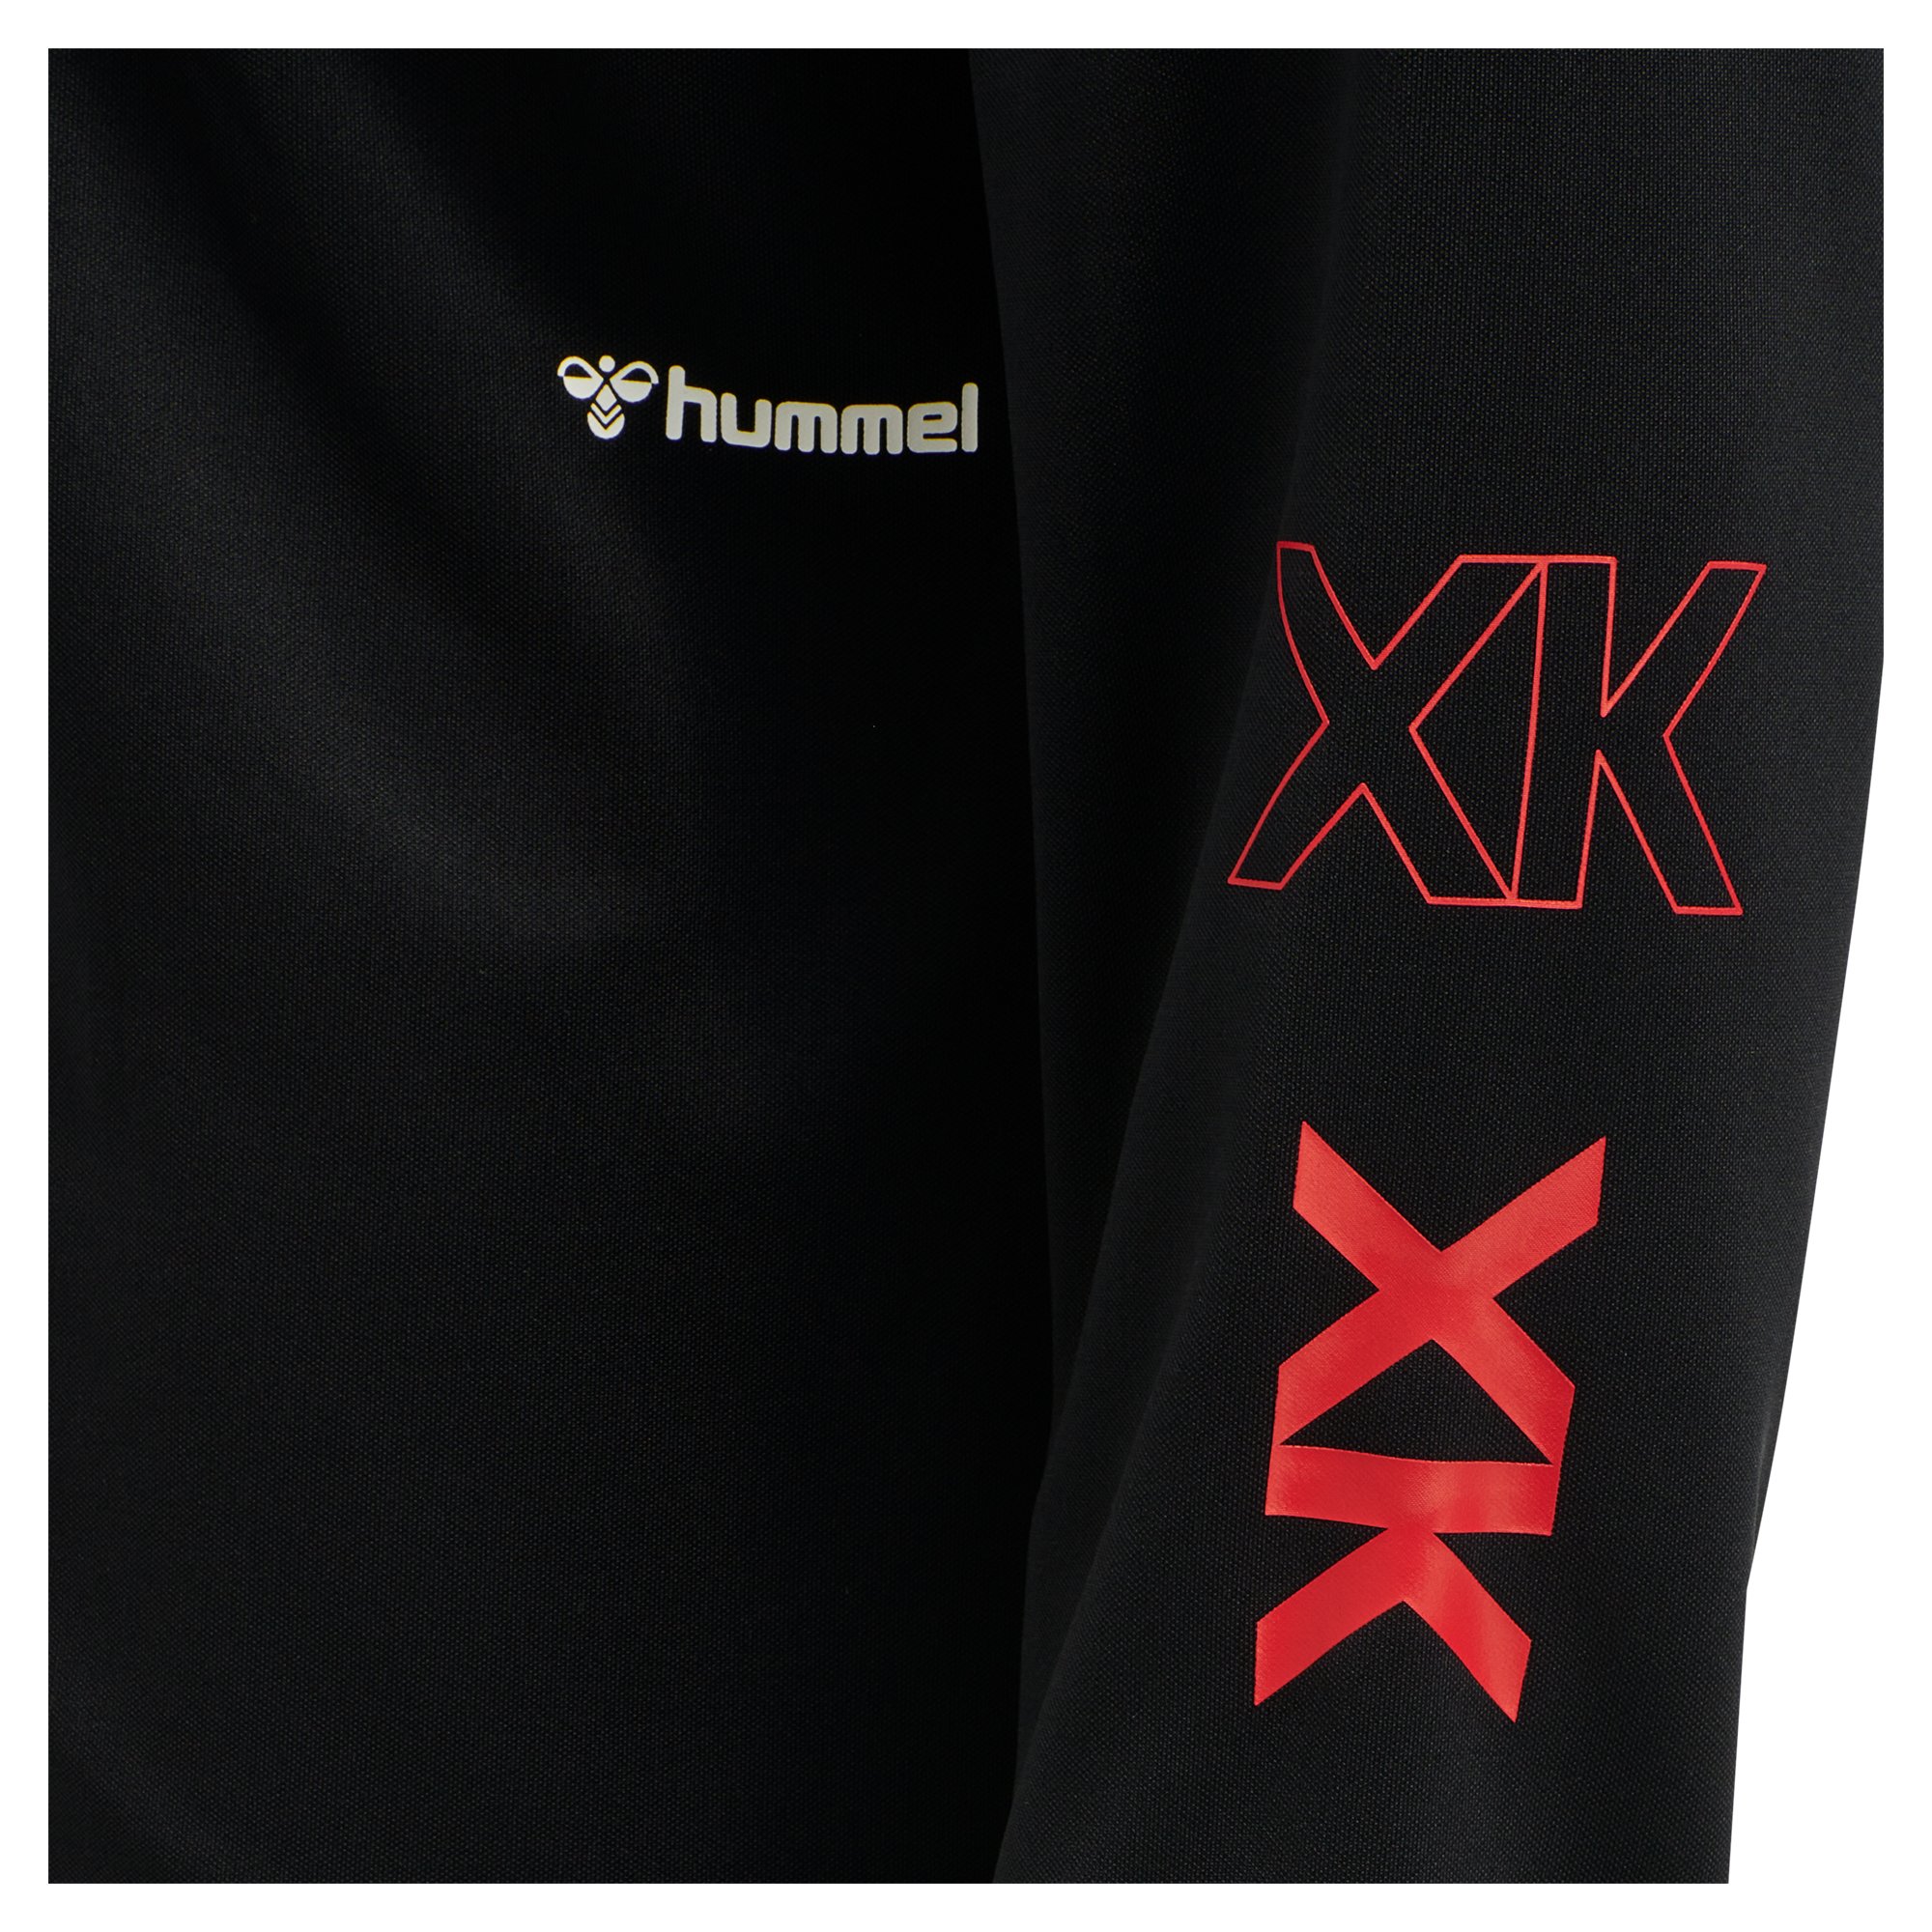 Hummel Pro XK Crew Neck